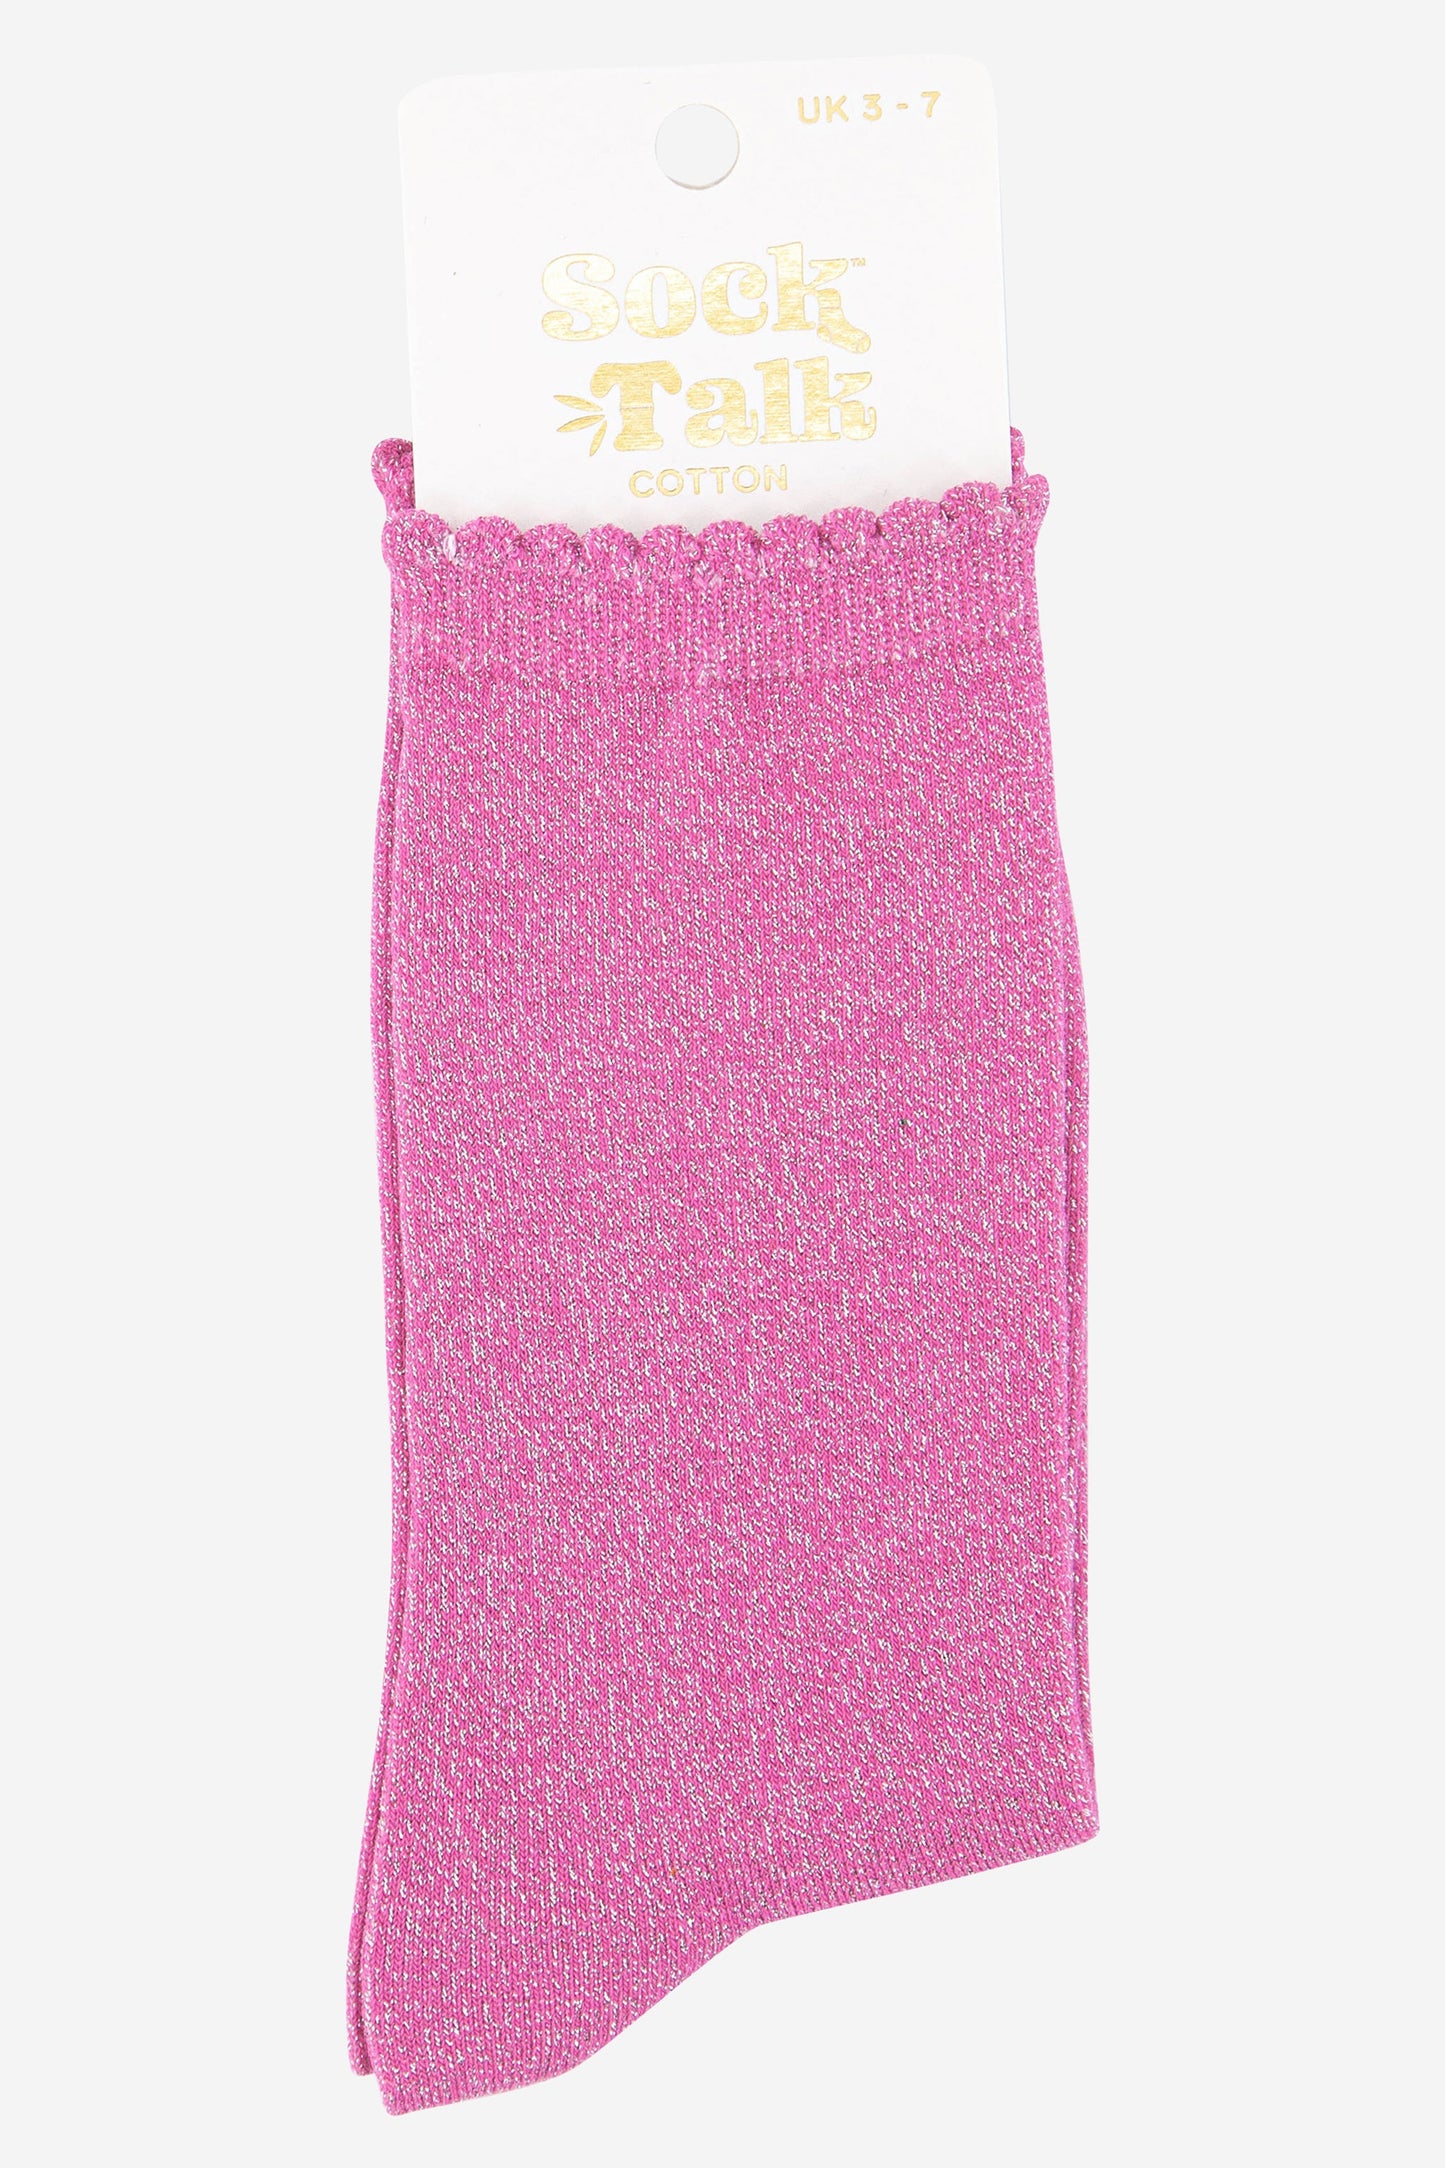 hot pink scalloped cuff cotton glitter socks uk size 3-7